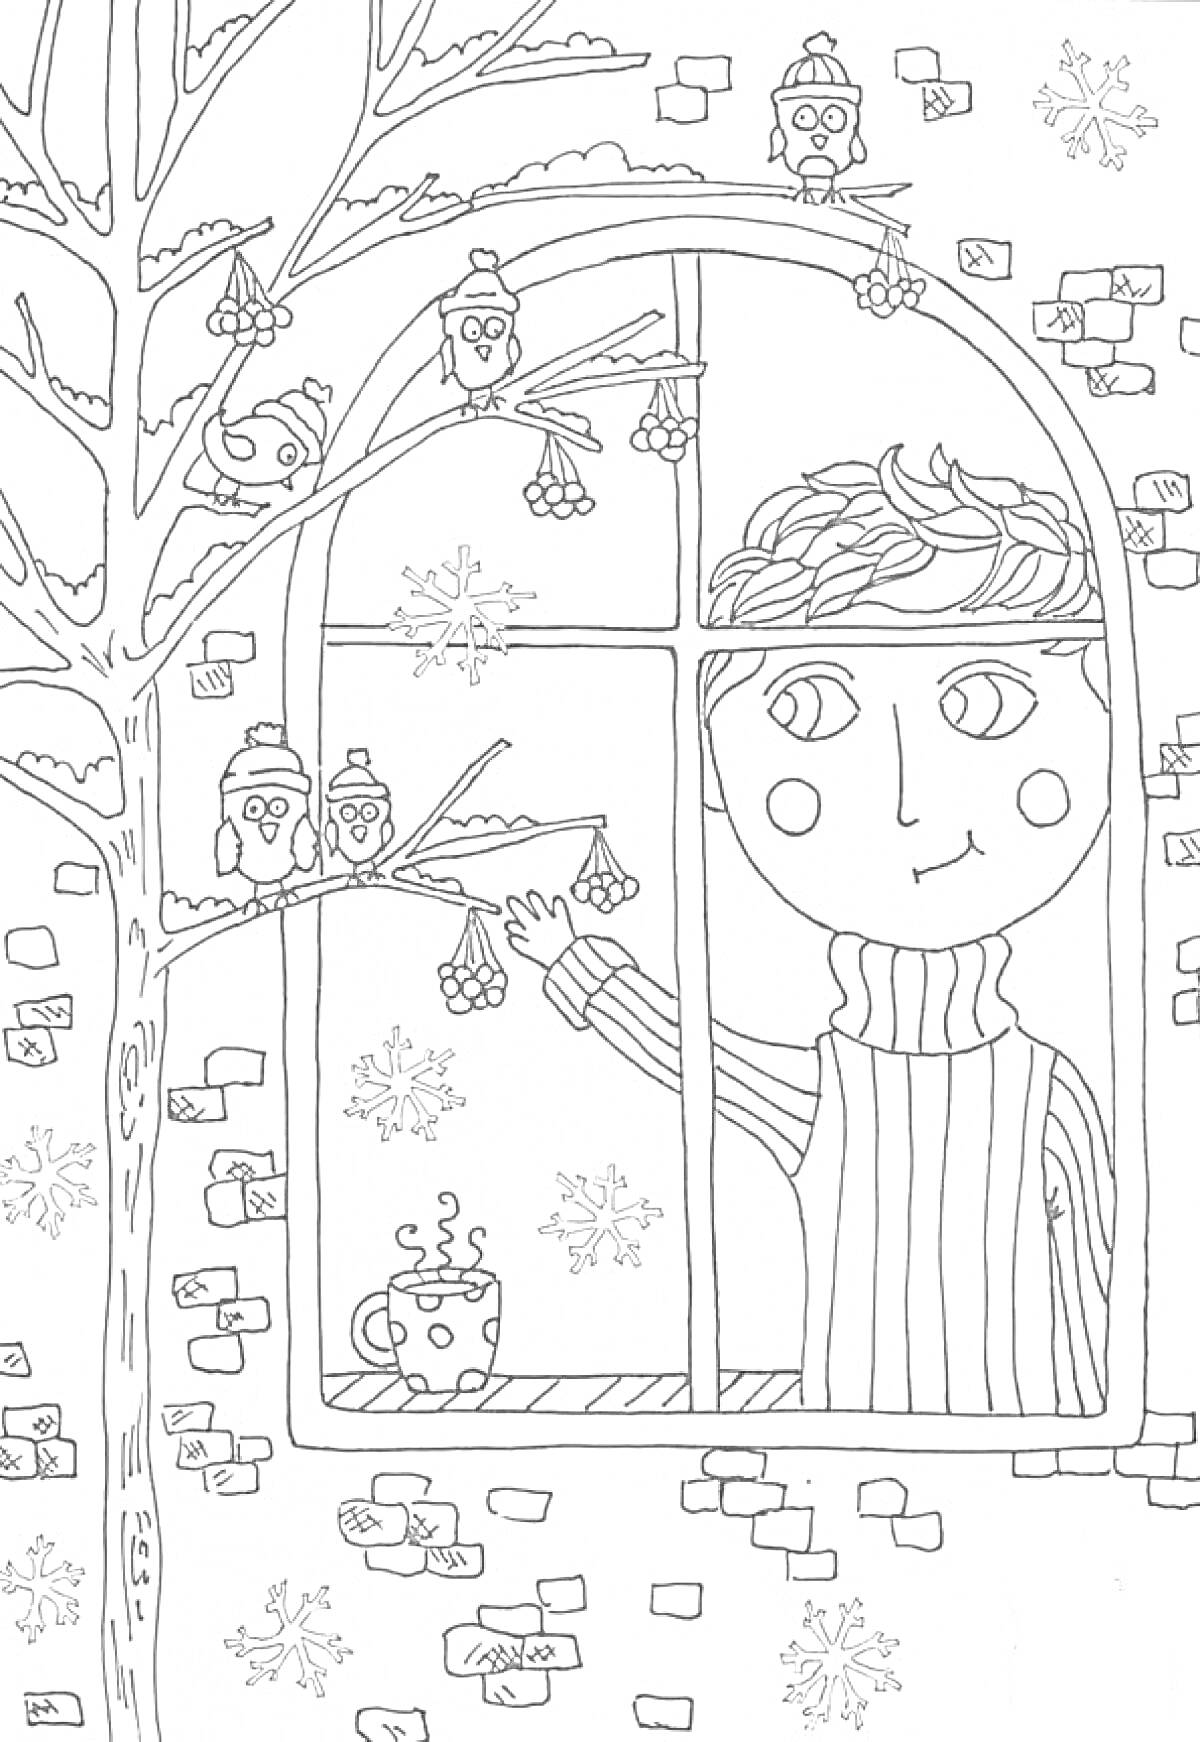 Раскраска Мальчик за окном с чаем и снегирями на ветвях